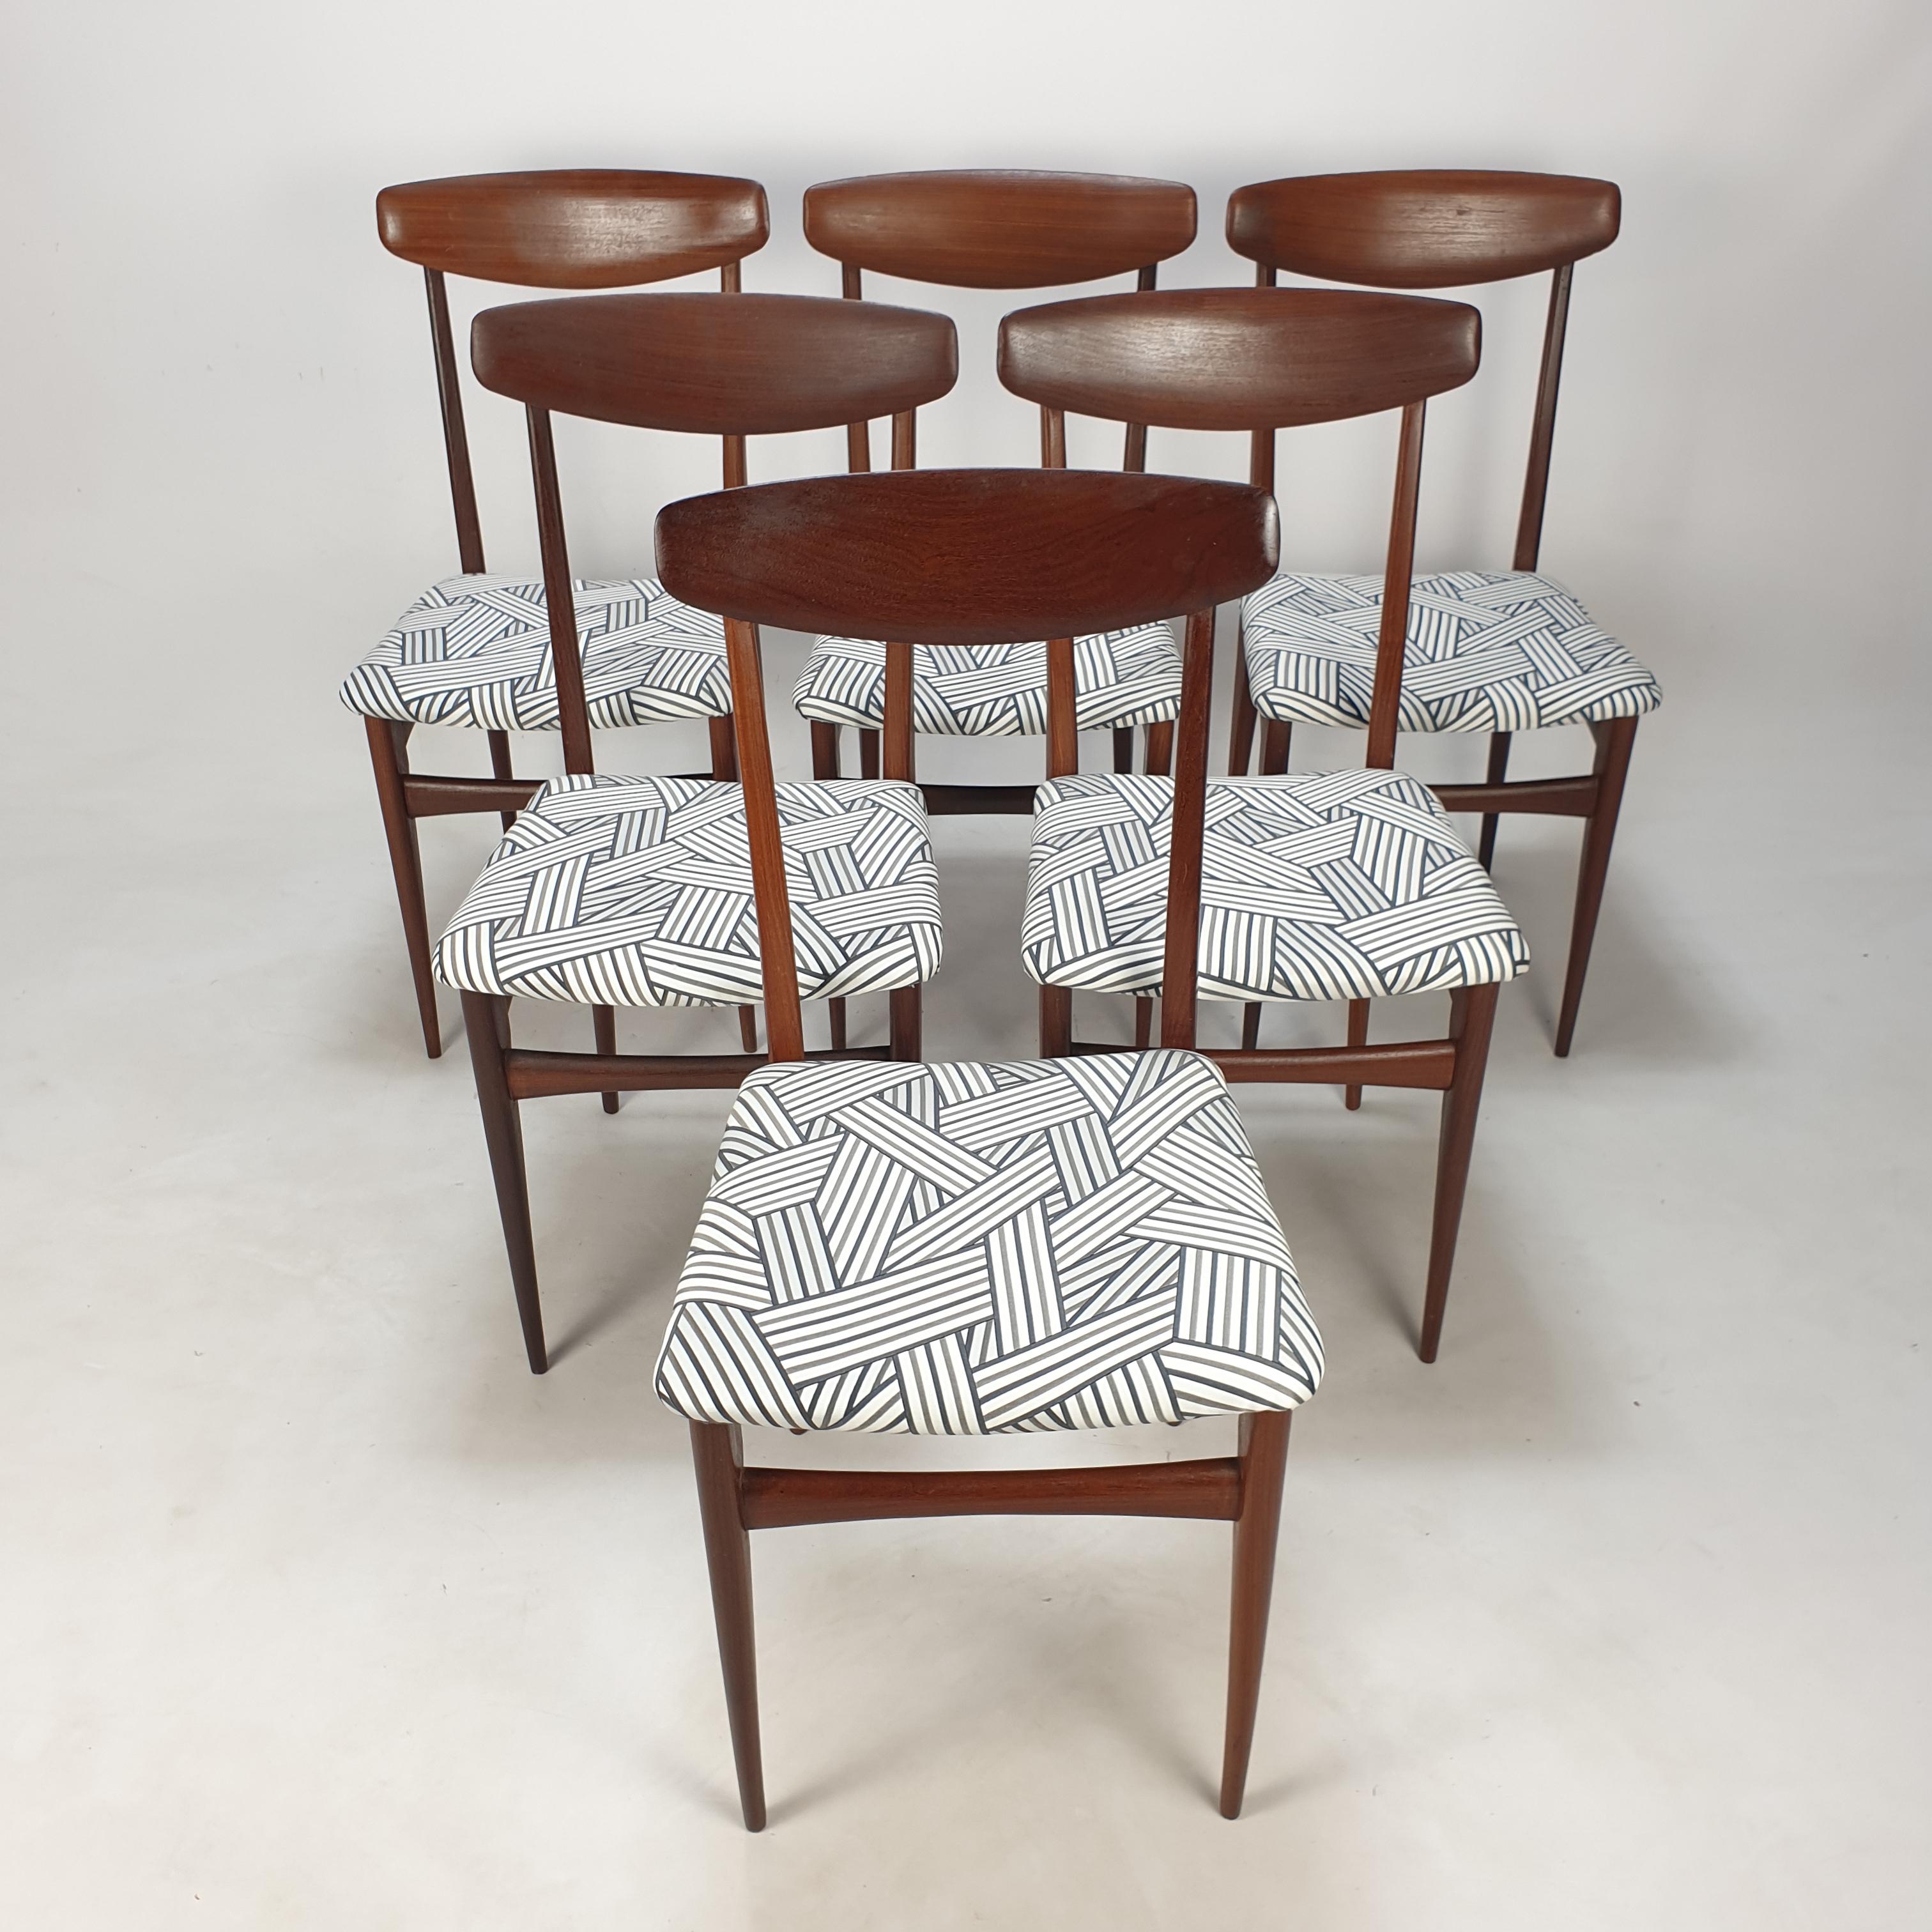 Joli ensemble de 6 chaises de salle à manger, conçues et fabriquées en Italie dans les années 50.

La structure en bois de teck est très élégante mais solide.

Les chaises viennent d'être retapissées avec un nouveau tissu merveilleux de Dedar